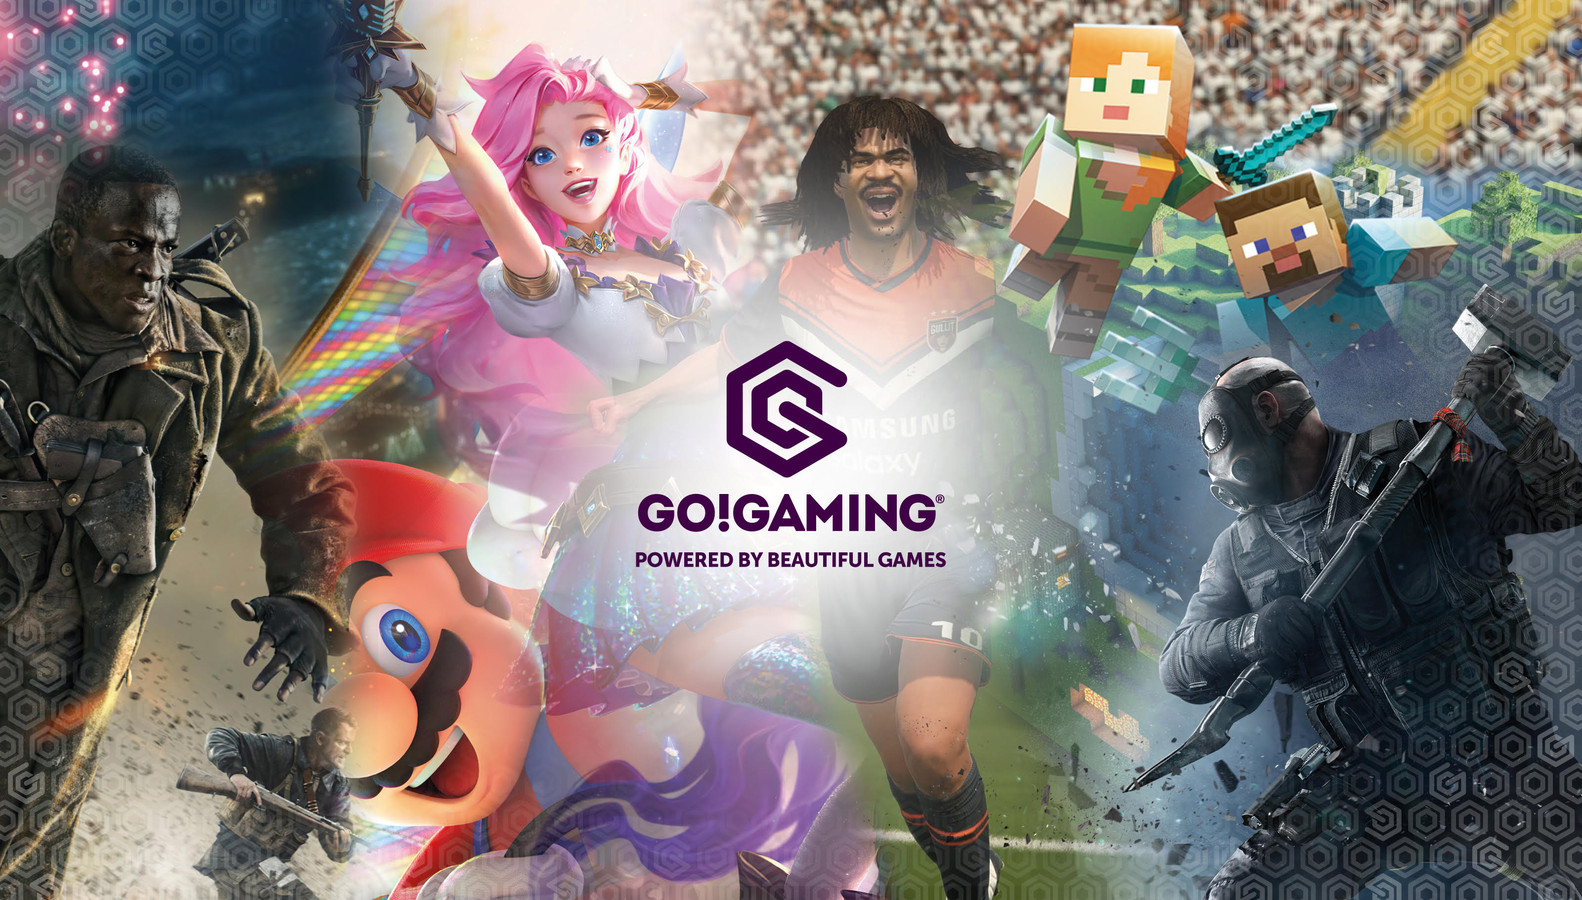 Pathé heeft in samenwerking met Go!Gaming het gamecentrum opgezet.